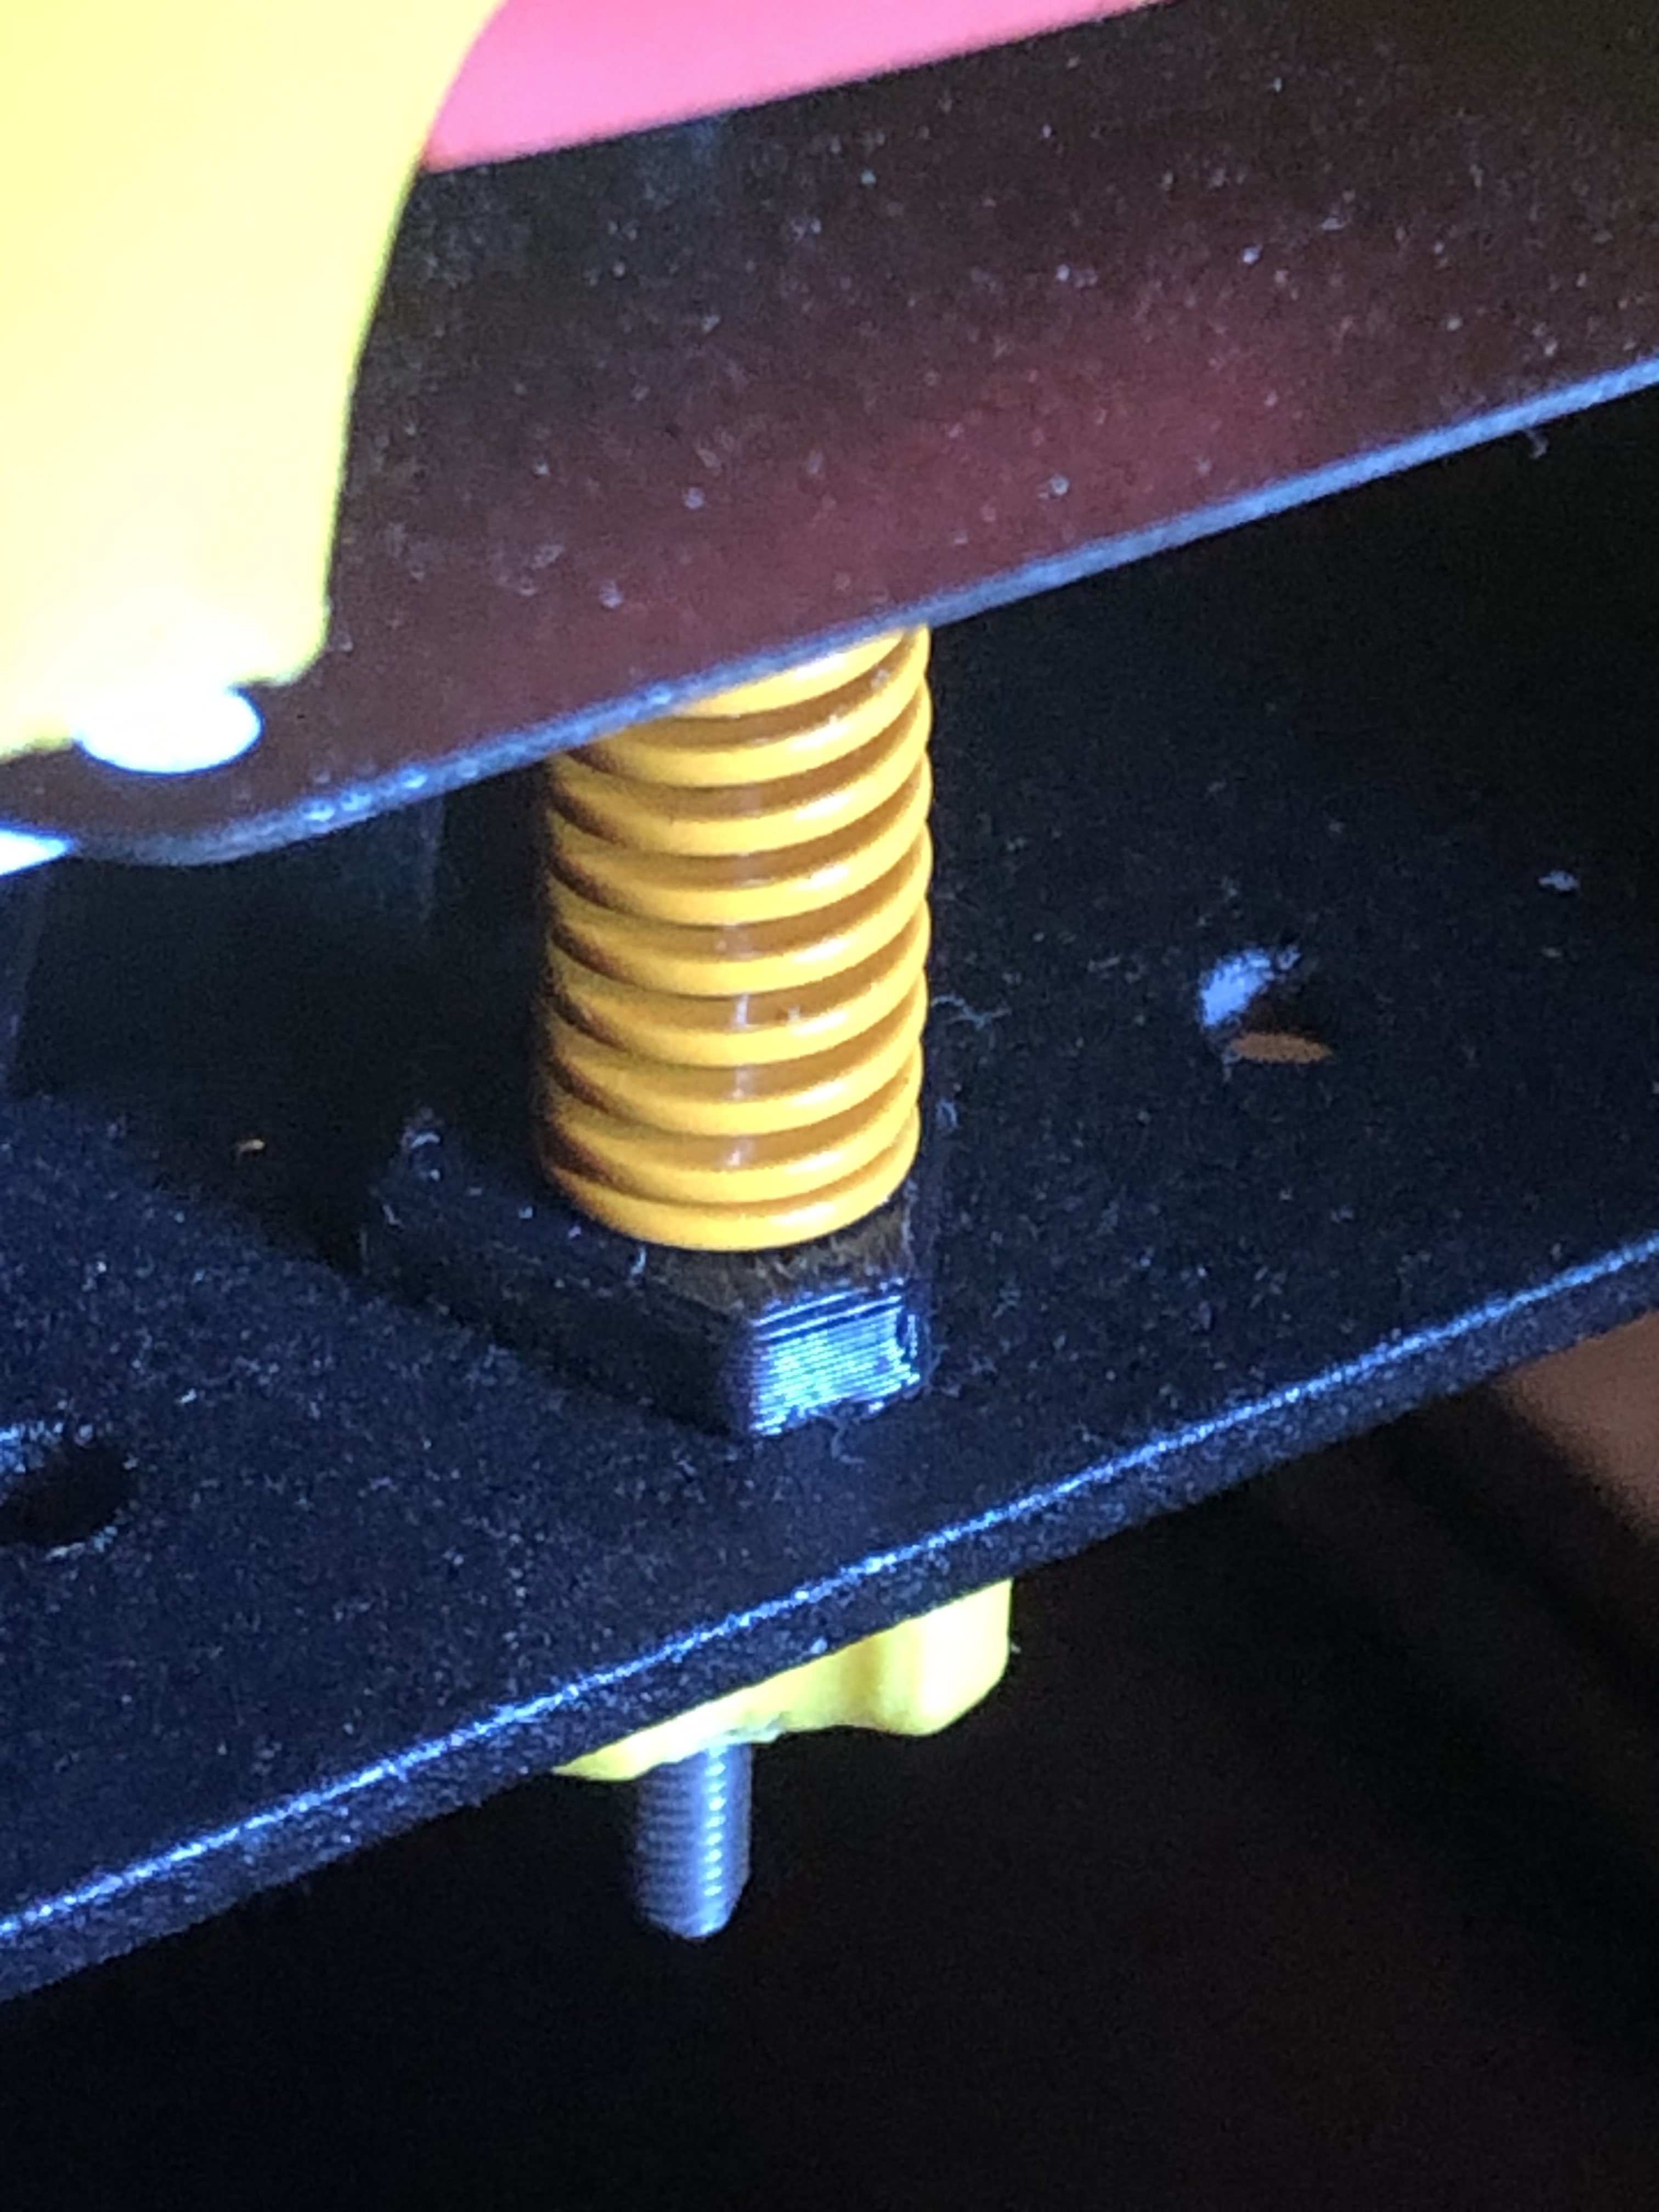 Voron V0.1: Shim for adjustment springs